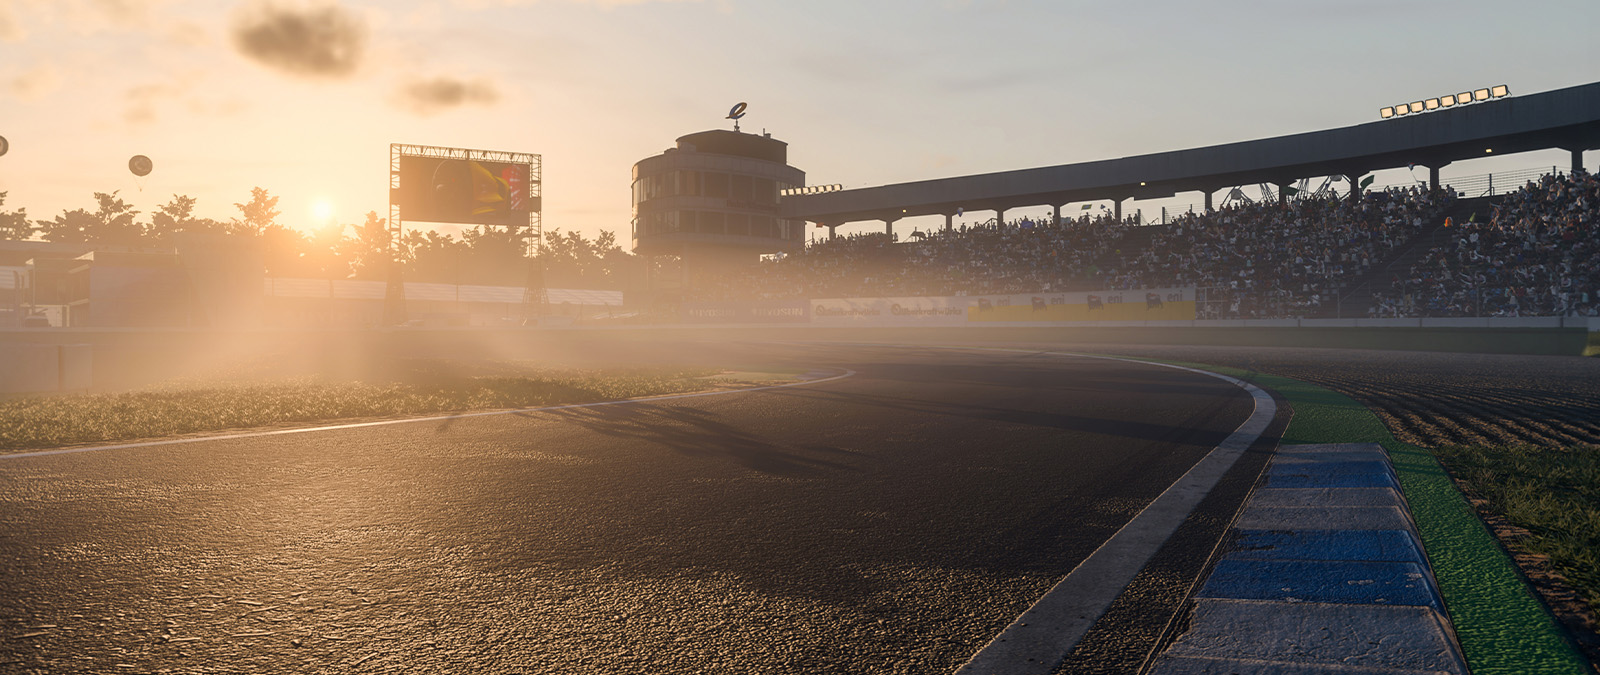 Forza Motorsports entrega um salto de geração em fidelidade, imersão e  realismo - Xbox Wire em Português